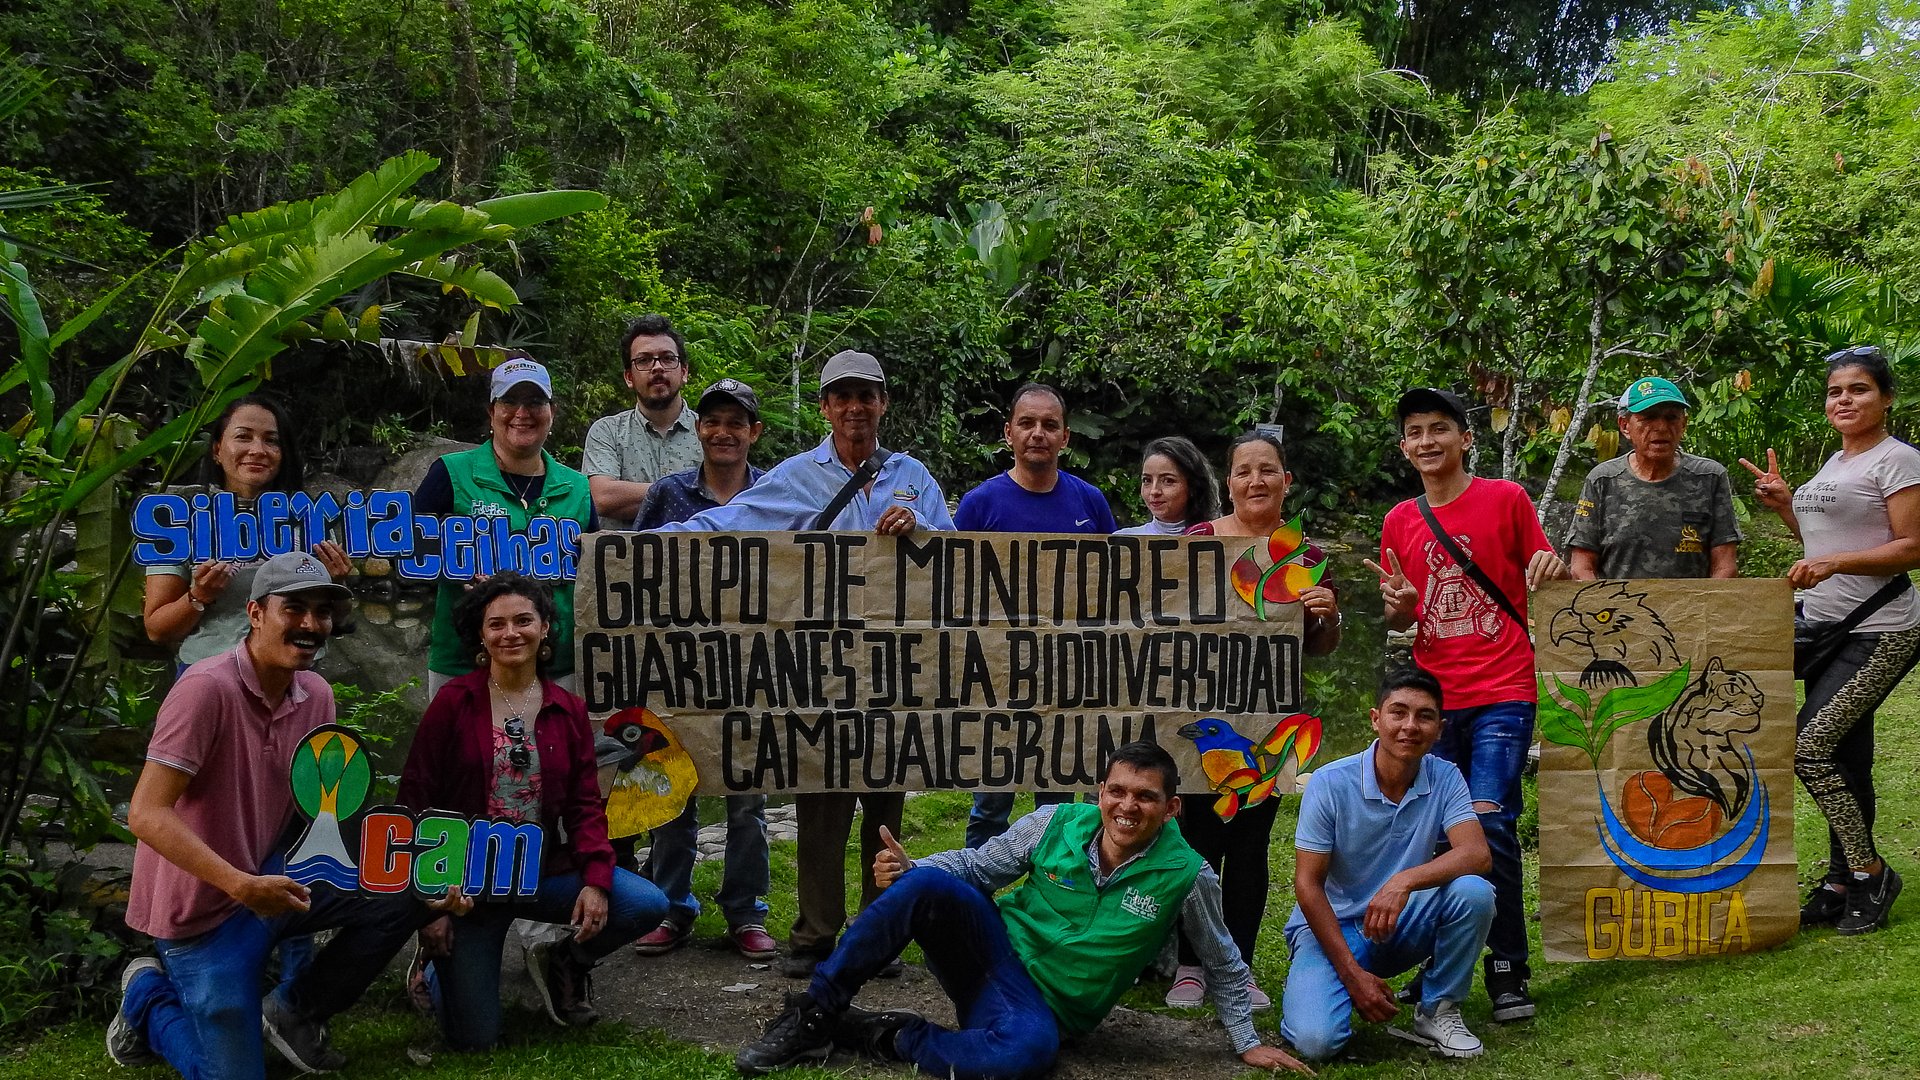 Grupo de Monitoreo de la Biodiversidad Campoalegre